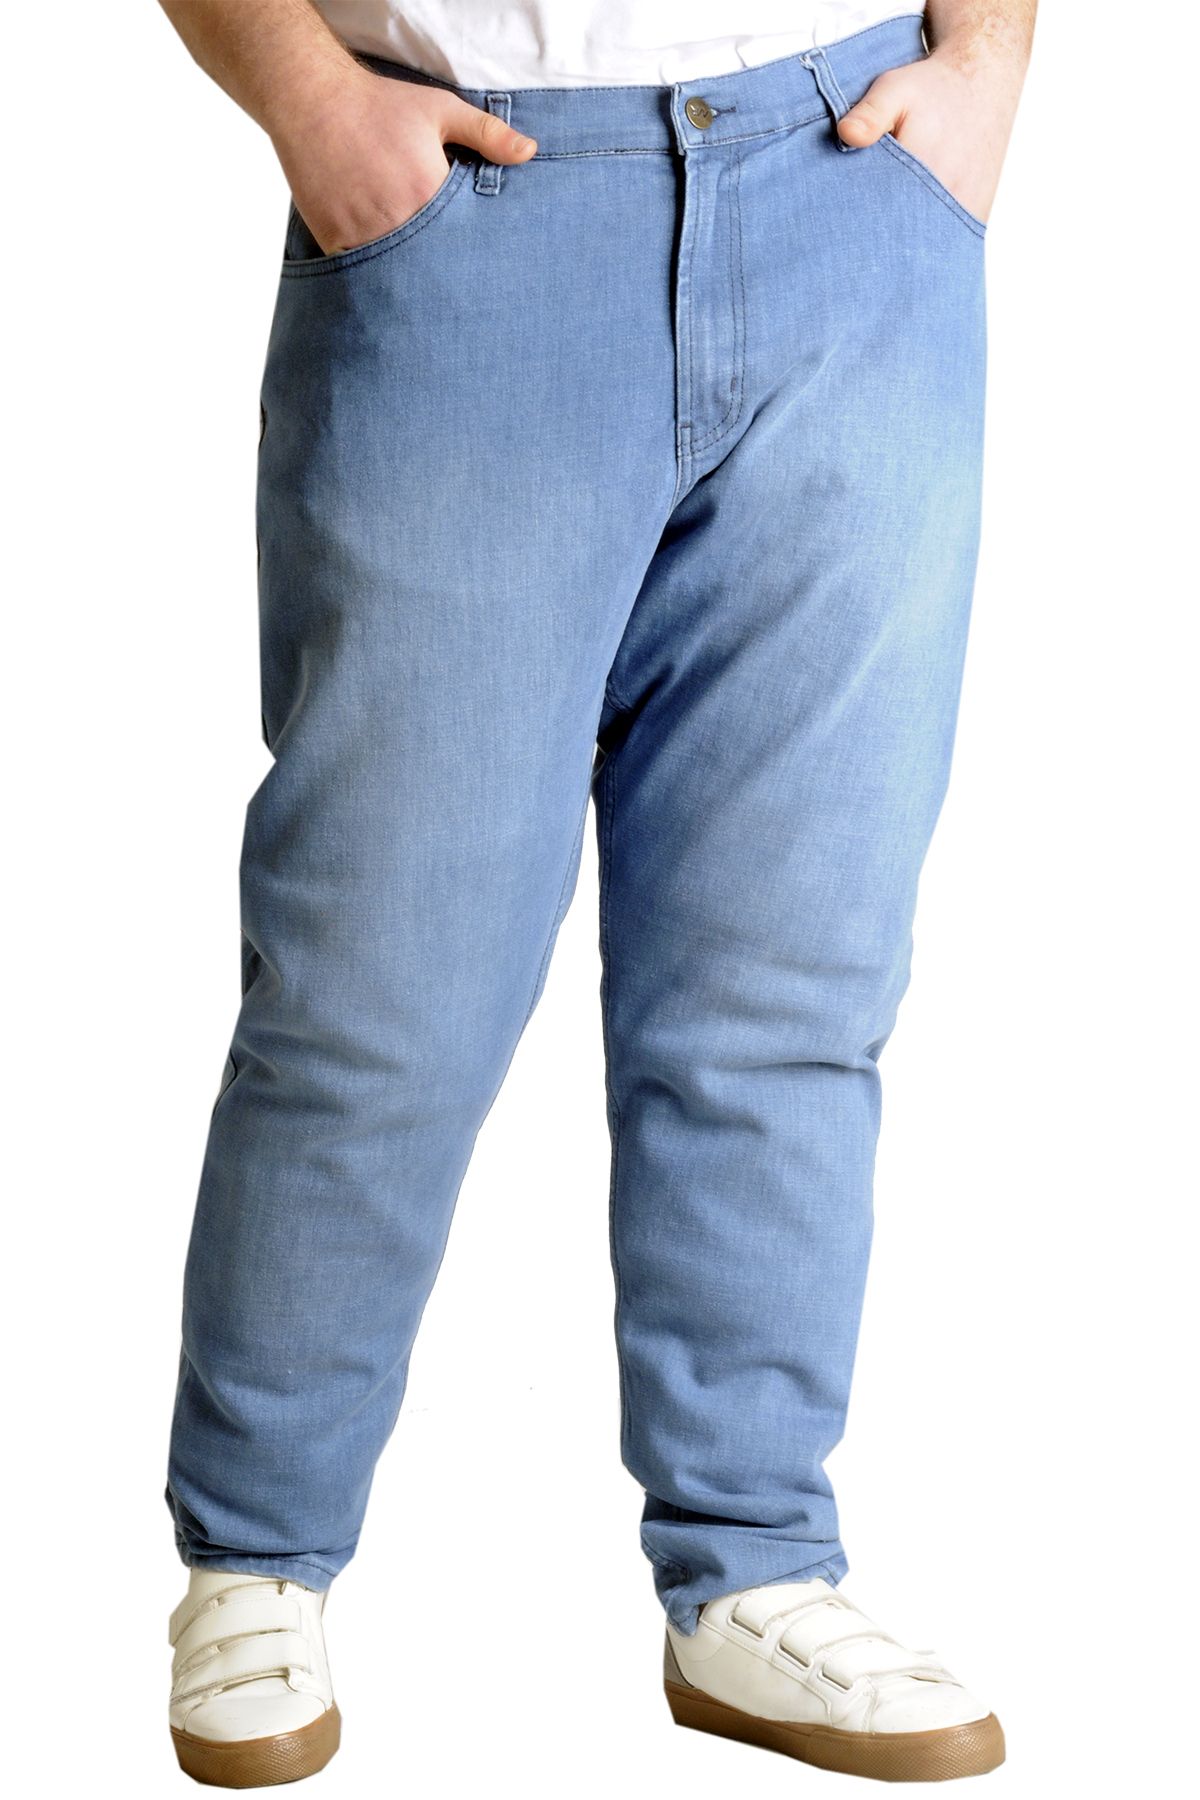 Modexl Mode Xl Büyük Beden Erkek Kot Pantolon Marwel Noche Blue 22940k Mavı